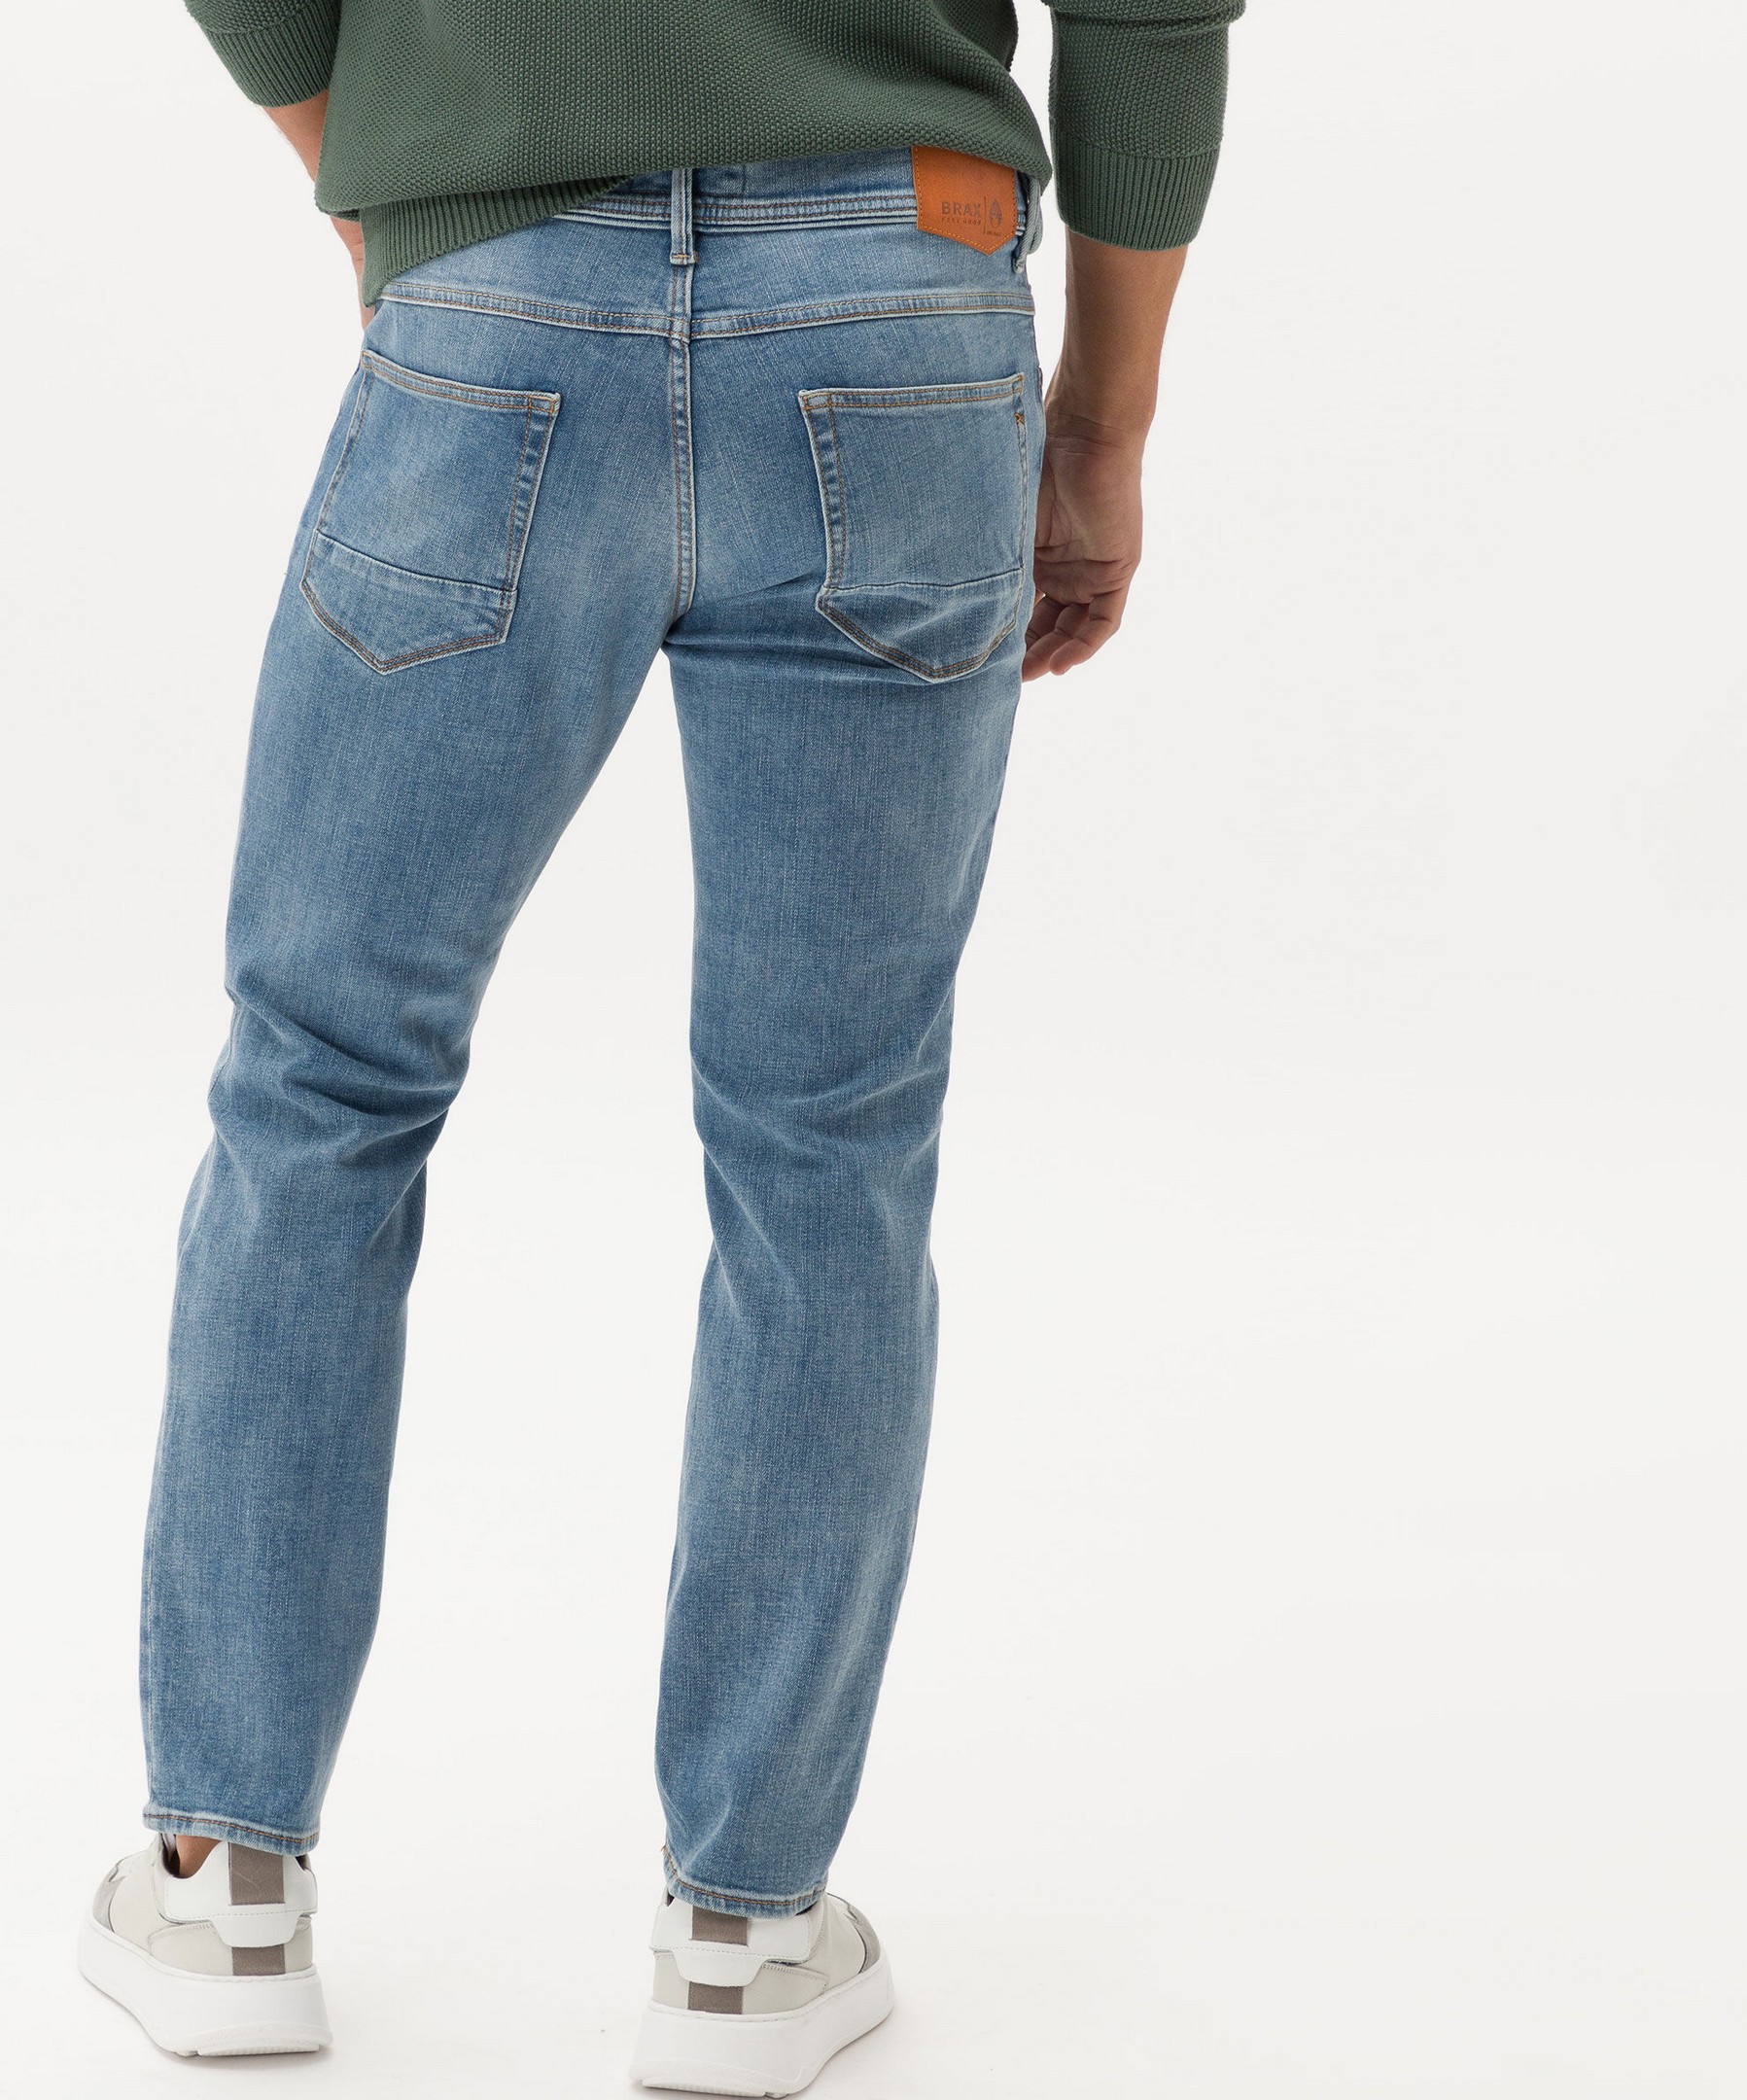 Rozing Chris Jeans Used | Jan Brax Superstretch Fashion Denim 5-Pocket Hi-Flex Planet Blue Salt Blue Men\'s Vintage